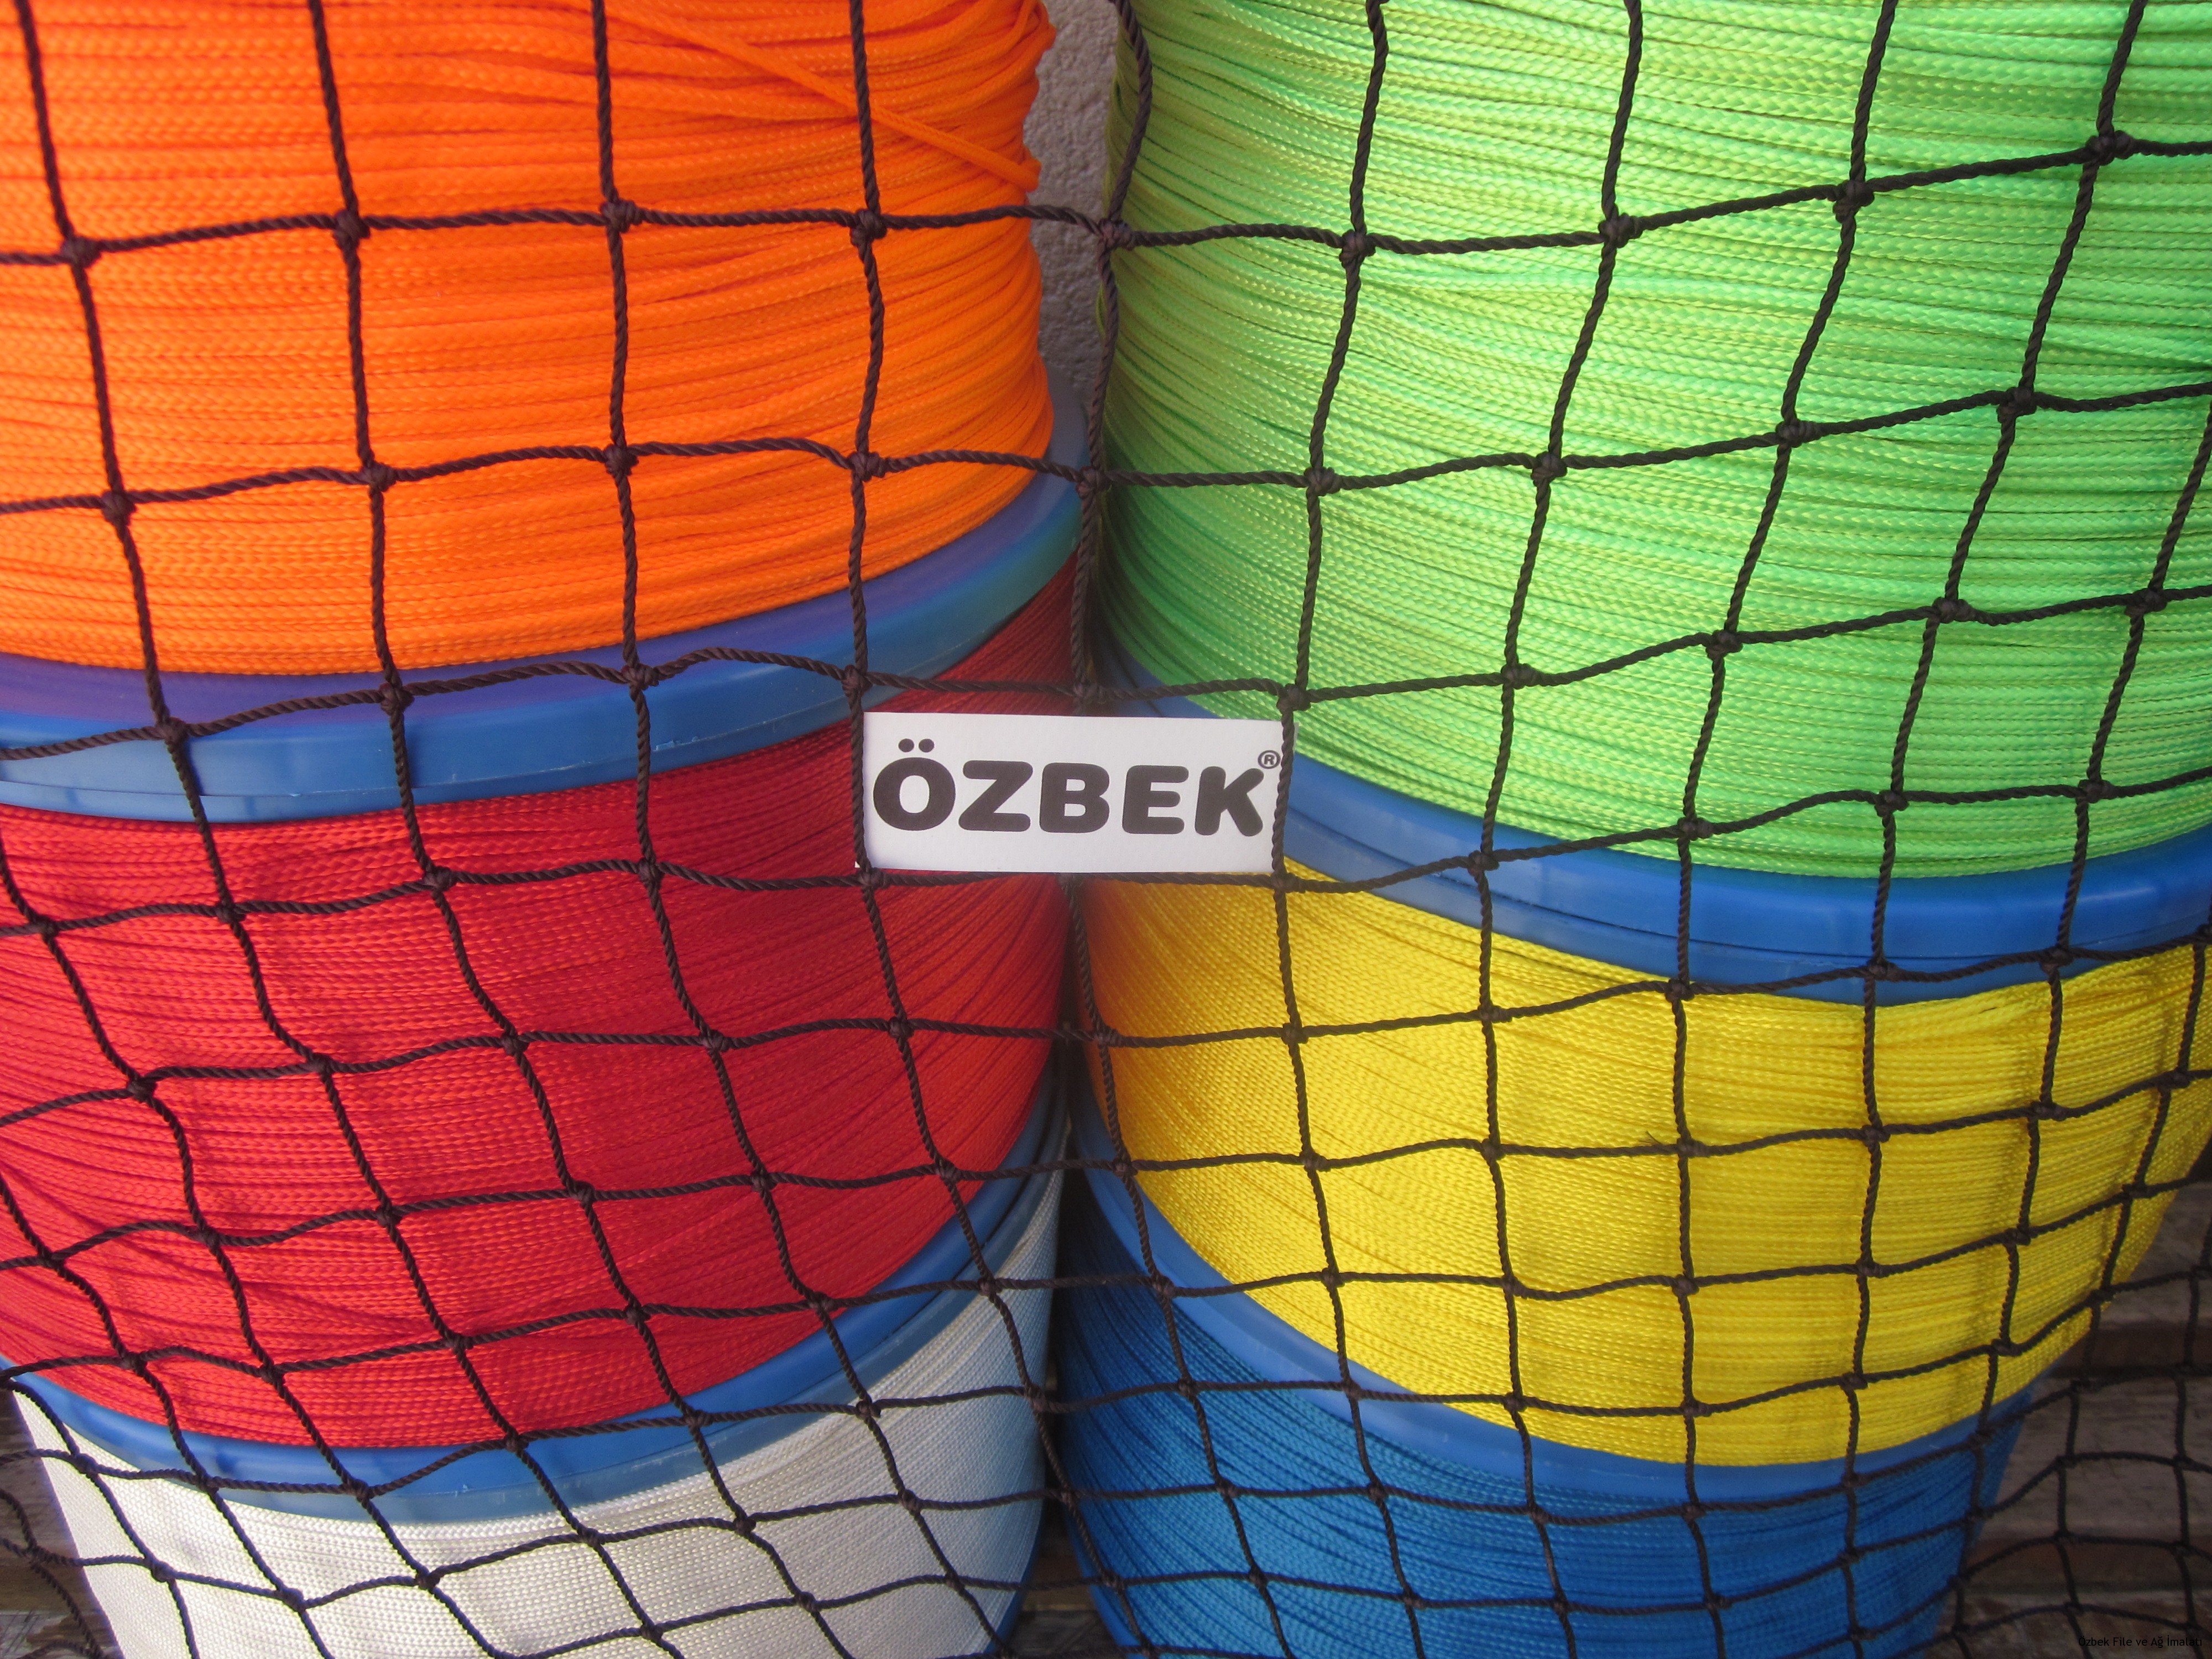 Kale Fİlesİ DeĞİŞİk Renk SeÇeneklerİ Özbek Spor File Ağ İmalatı Koruma Filesi Spor Fileleri